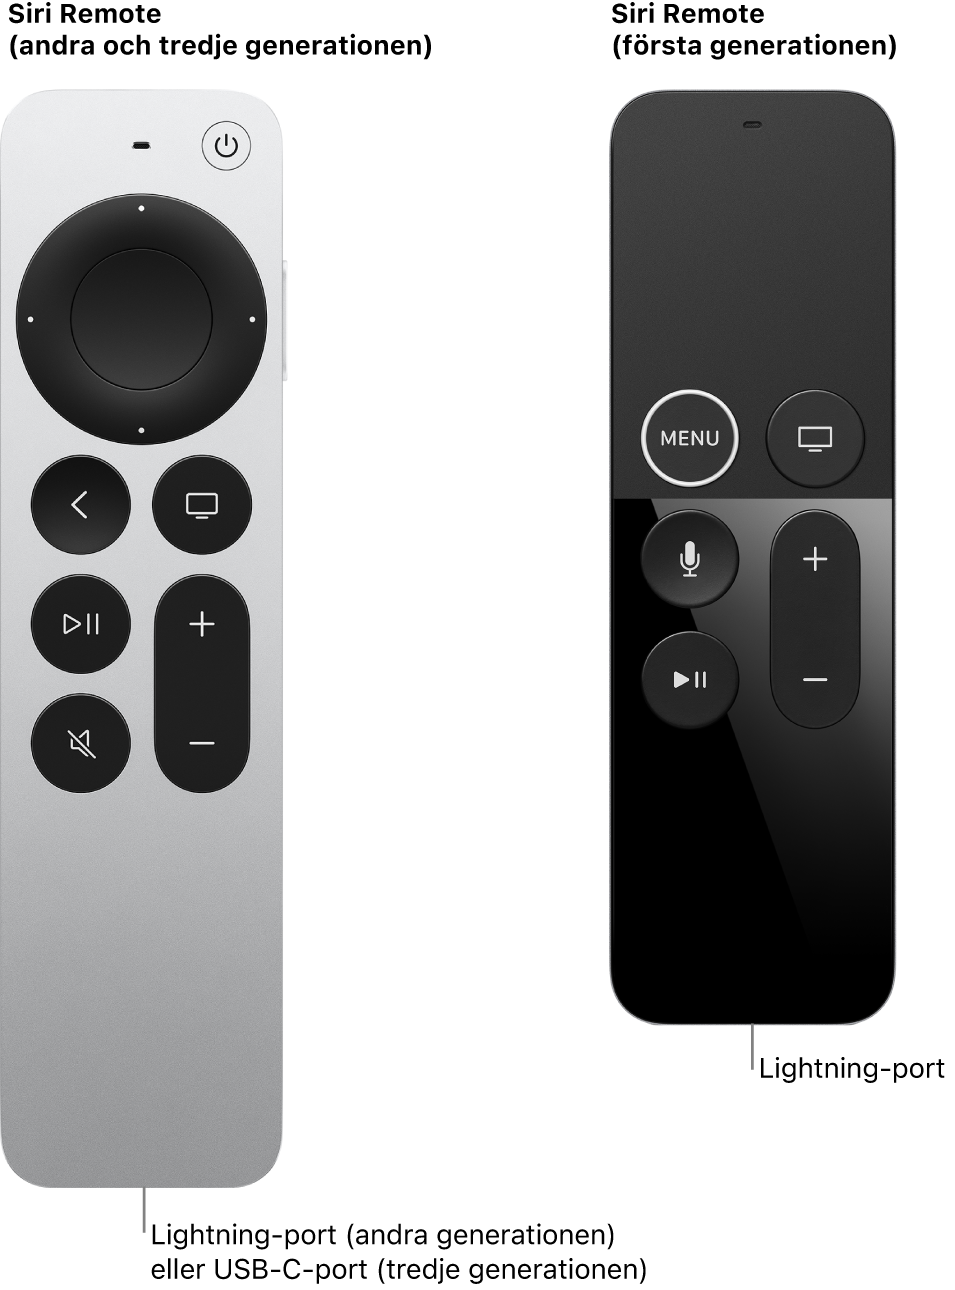 Bild på Siri Remote (andra och tredje generationen) och Siri Remote (första generationen) med anslutningsporten